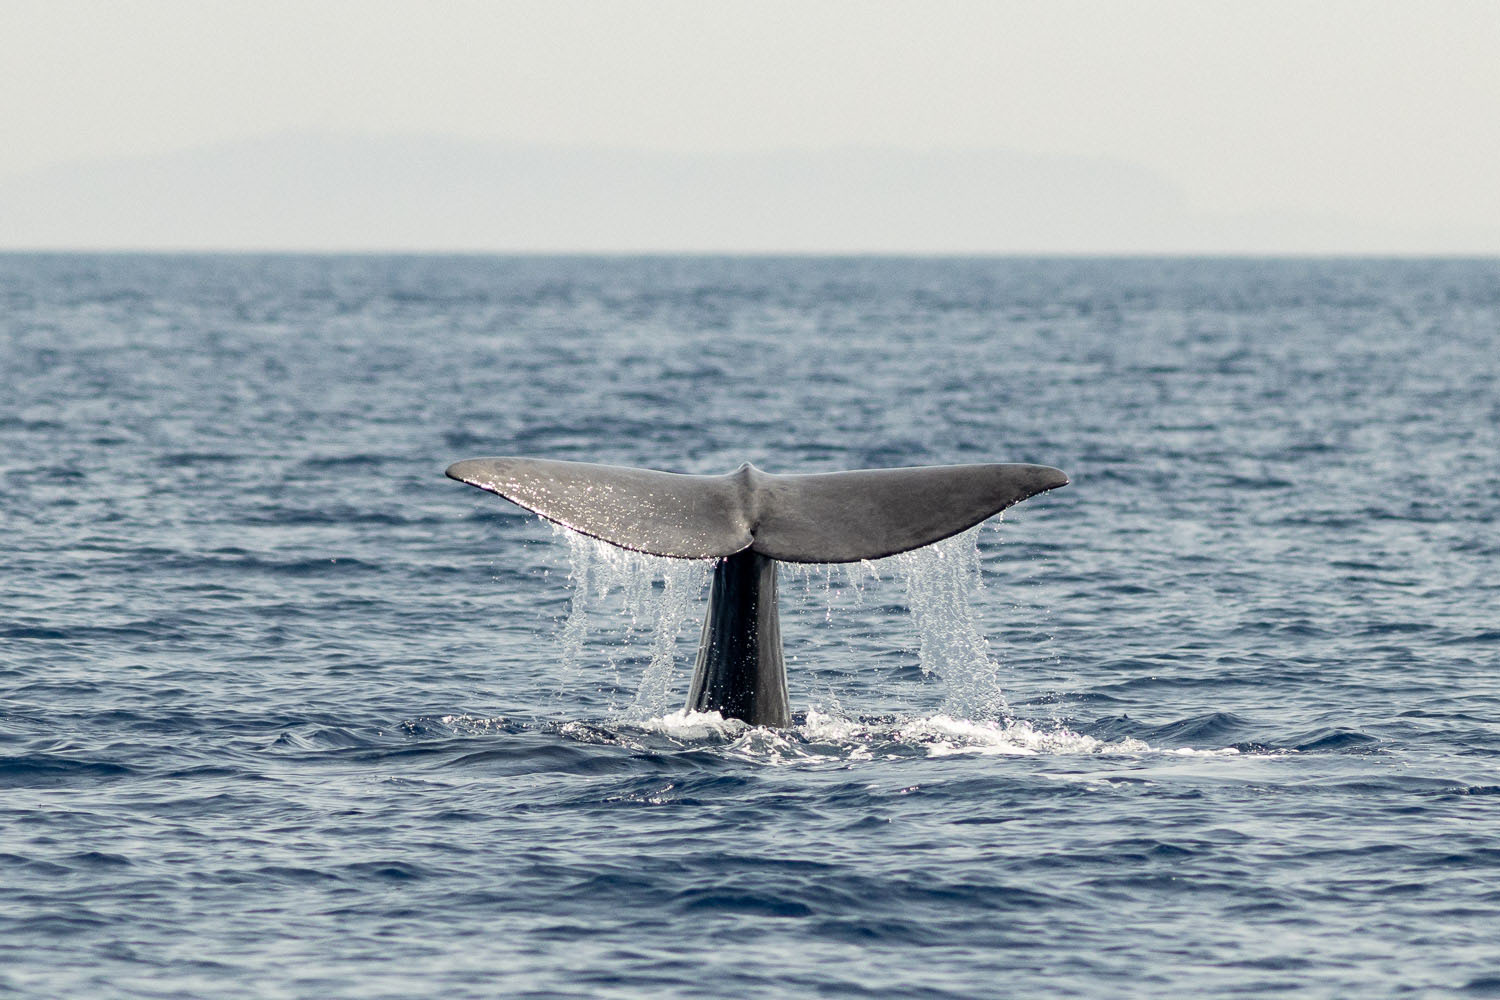 voyage scientifique - cetaces de mediterranee vers la corse a la voile 30